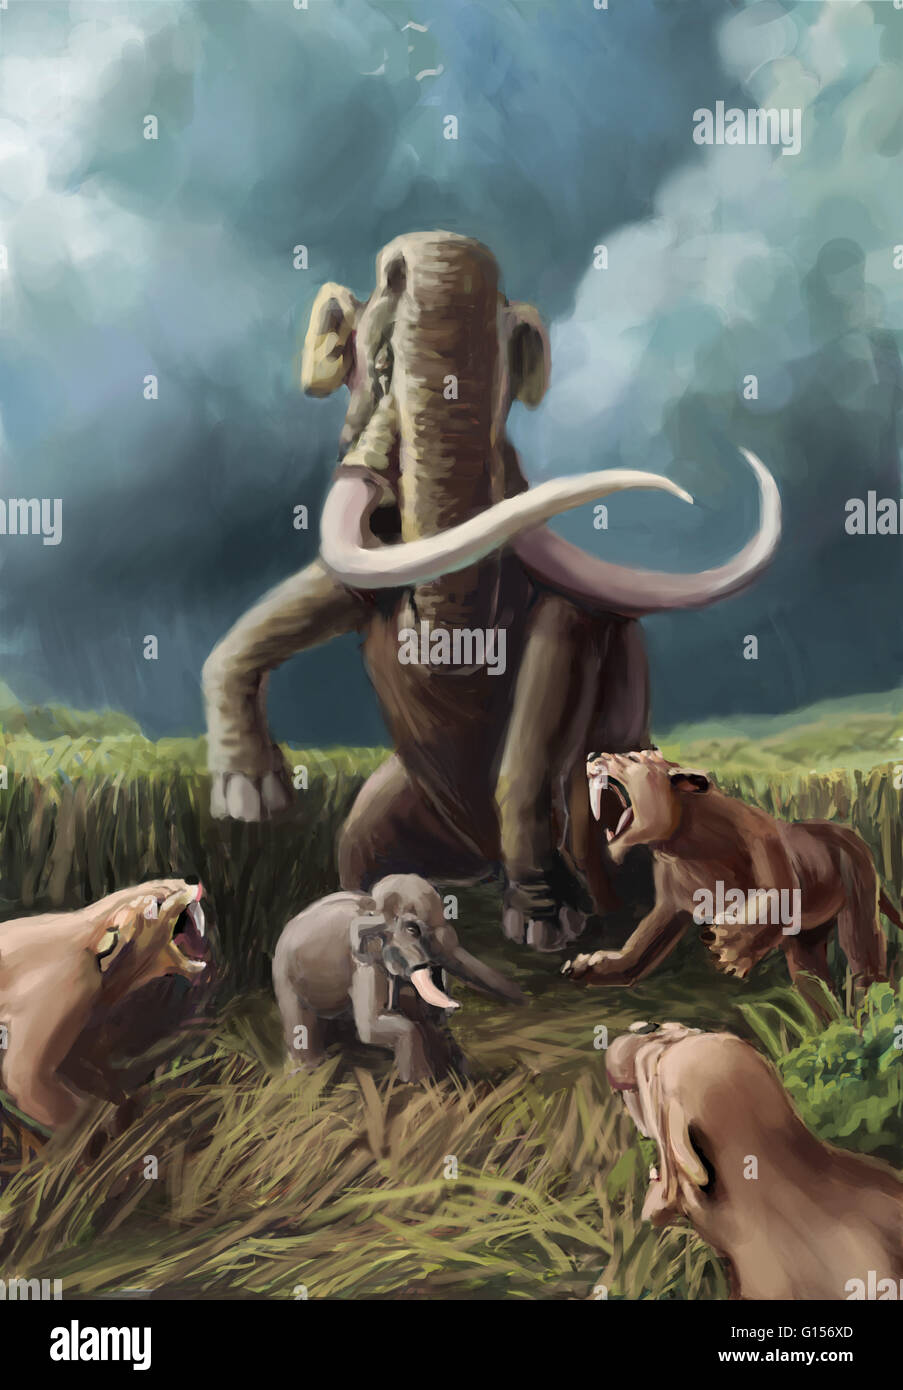 Illustration montrant un mammouth colombien (Mammuthus columbi) lutter contre un groupe de chats à dents de sabre. Les deux animaux ont vécu durant le Pléistocène, bien que les chats à dents de sabre remontent à l'Éocène. Banque D'Images